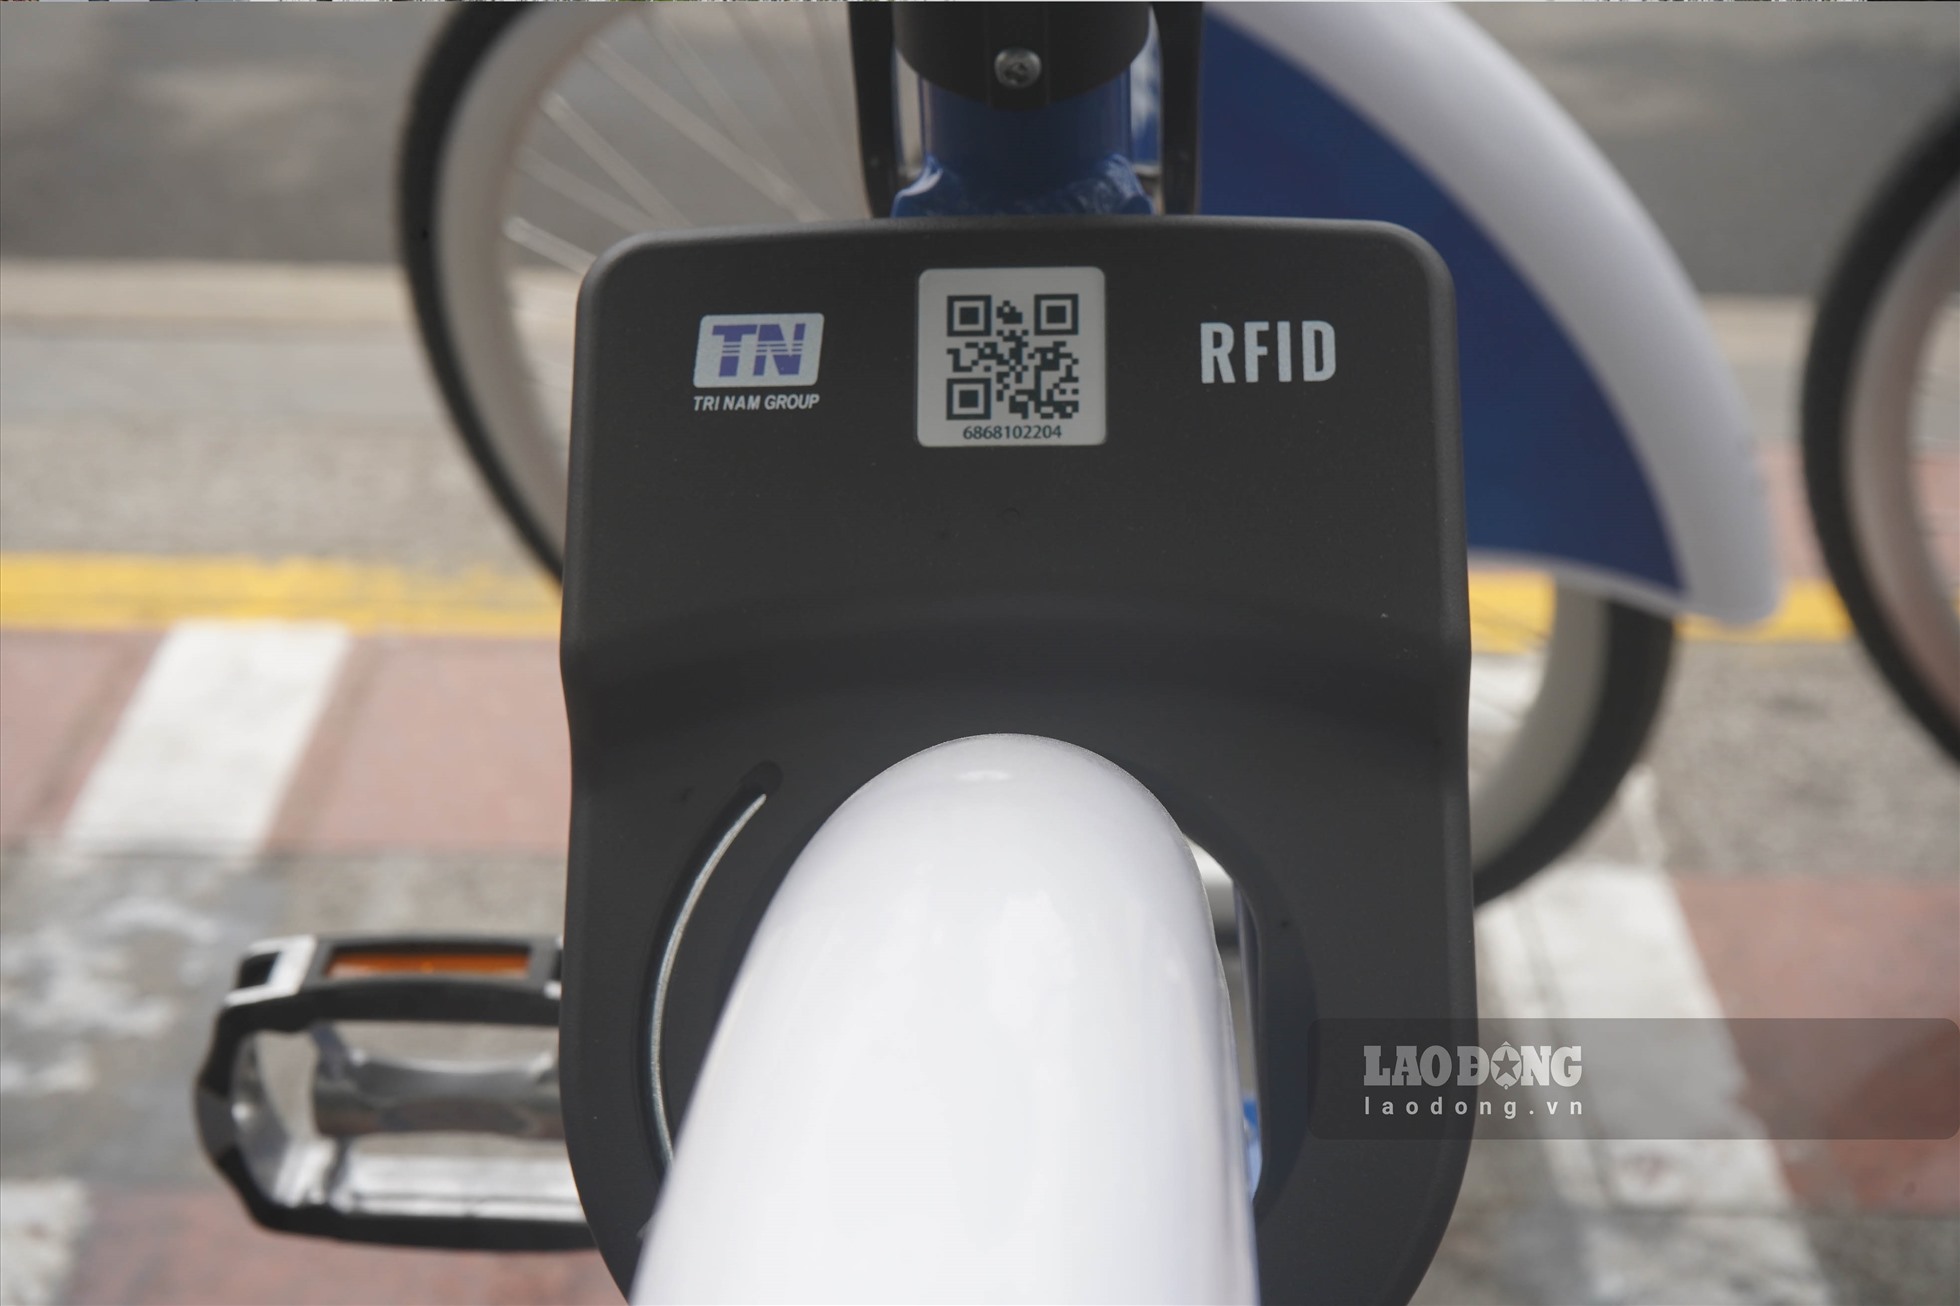 Mỗi xe đạp đều gắp ID định danh, có khóa thông minh và định vị. Thông qua phần mềm, nhân viên có thể biết được lộ trình di chuyển của xe.